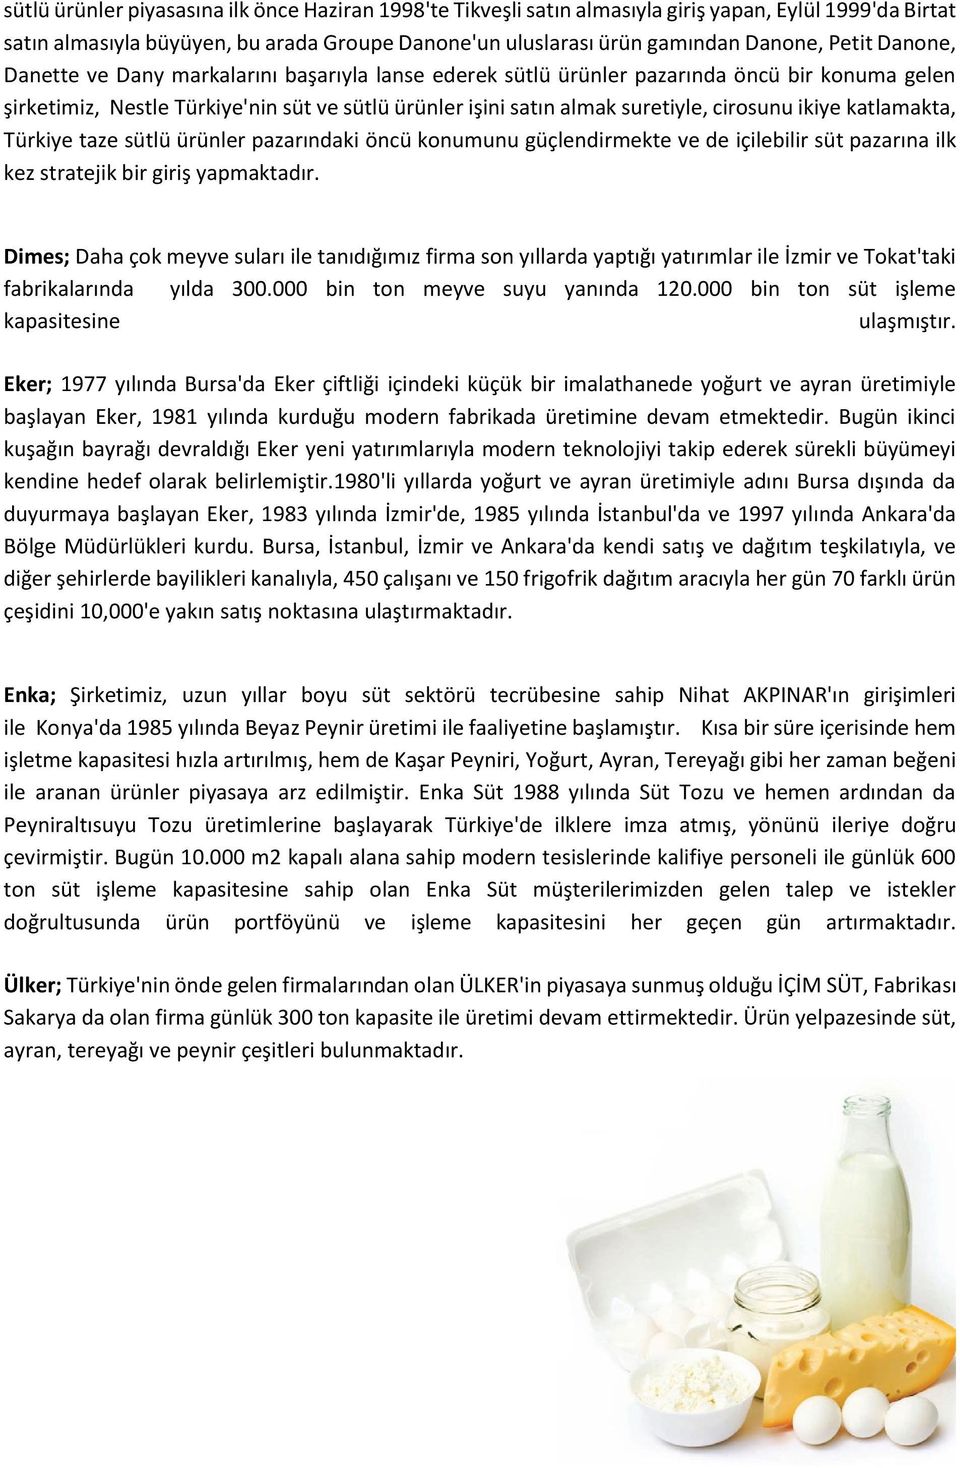 ikiye katlamakta, Türkiye taze sütlü ürünler pazarındaki öncü konumunu güçlendirmekte ve de içilebilir süt pazarına ilk kez stratejik bir giriş yapmaktadır.